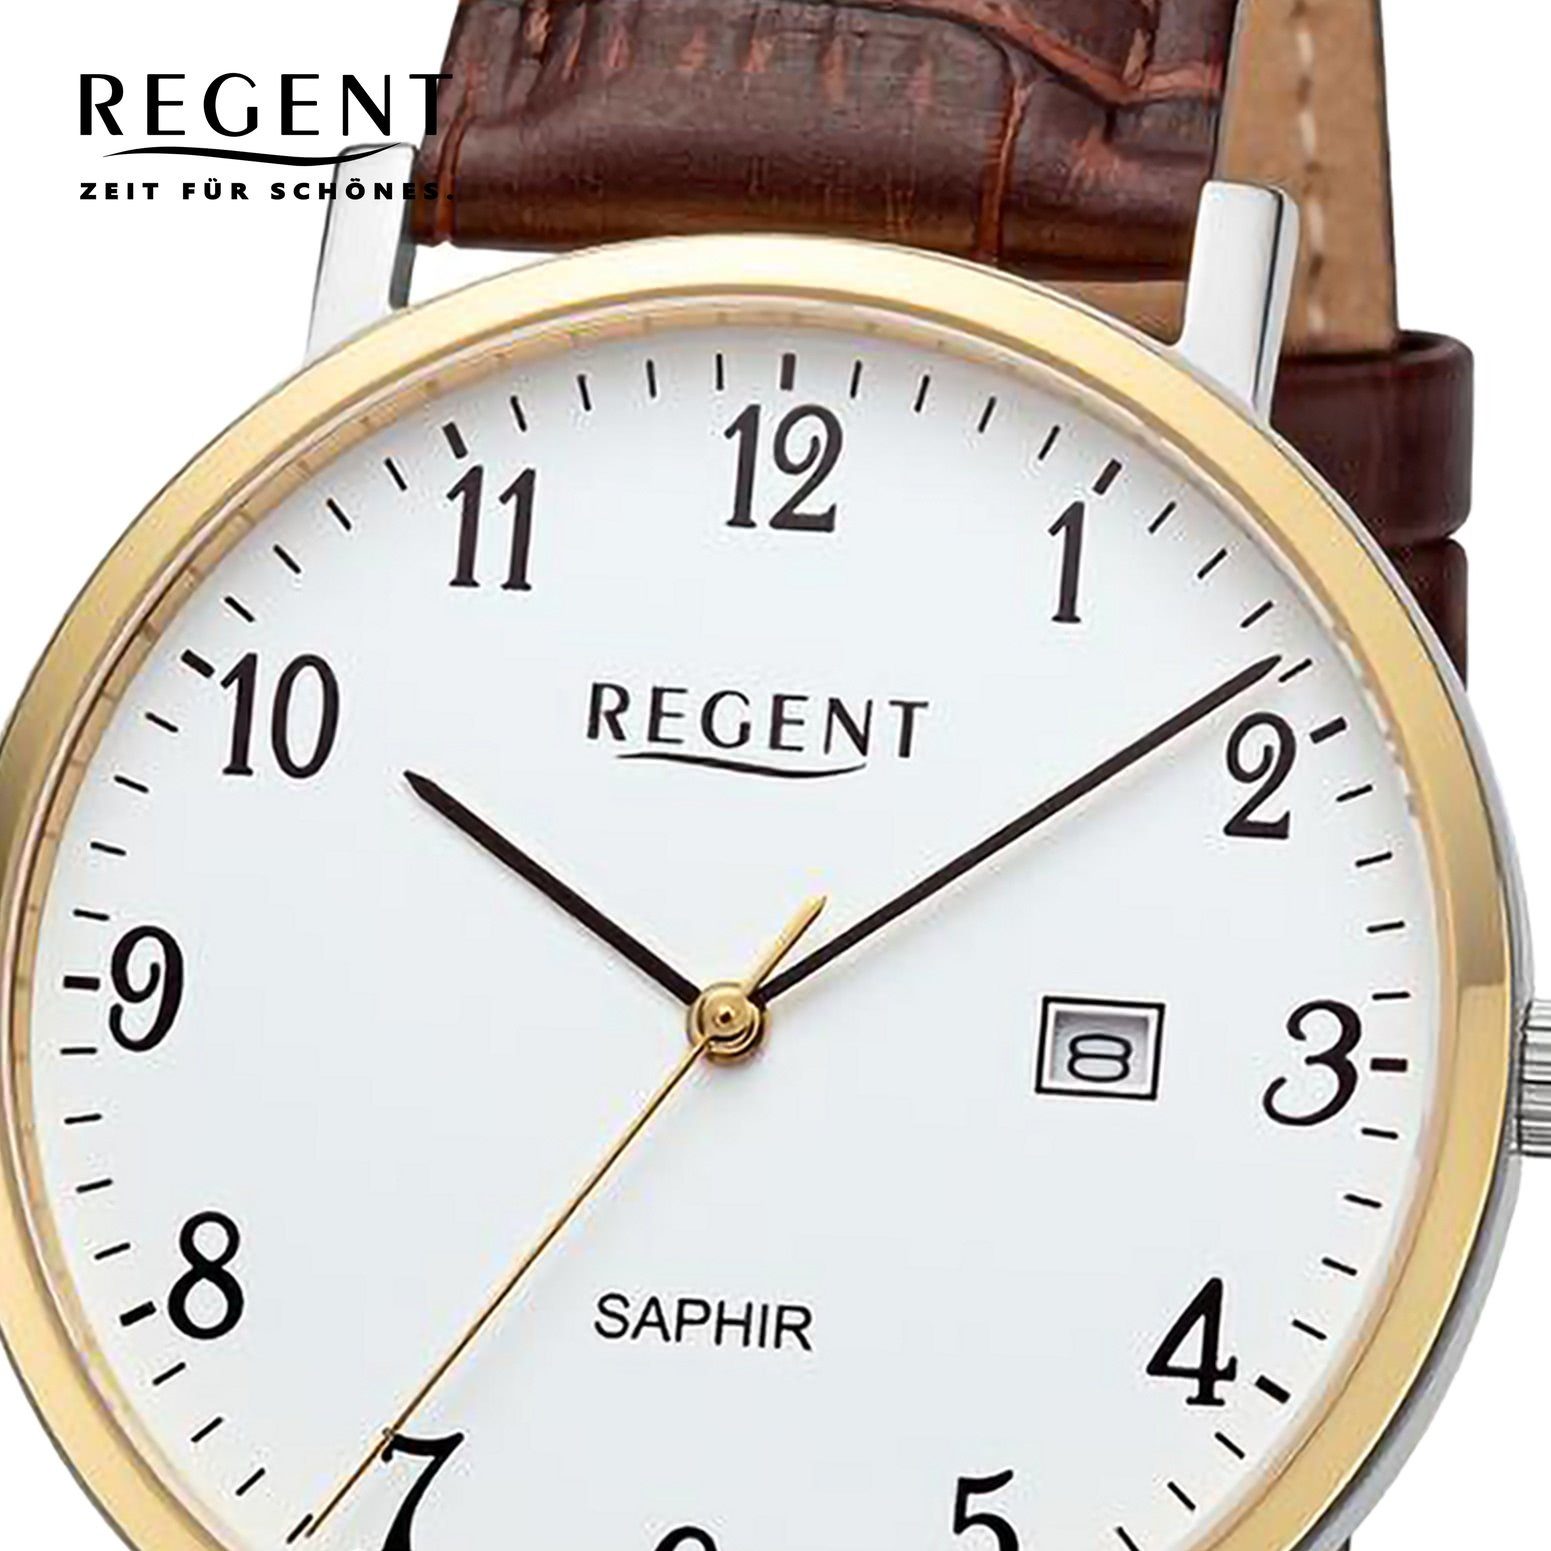 Regent Quarzuhr Analog, 40mm), Herren Lederarmband rund, groß extra Armbanduhr Armbanduhr Regent Herren (ca